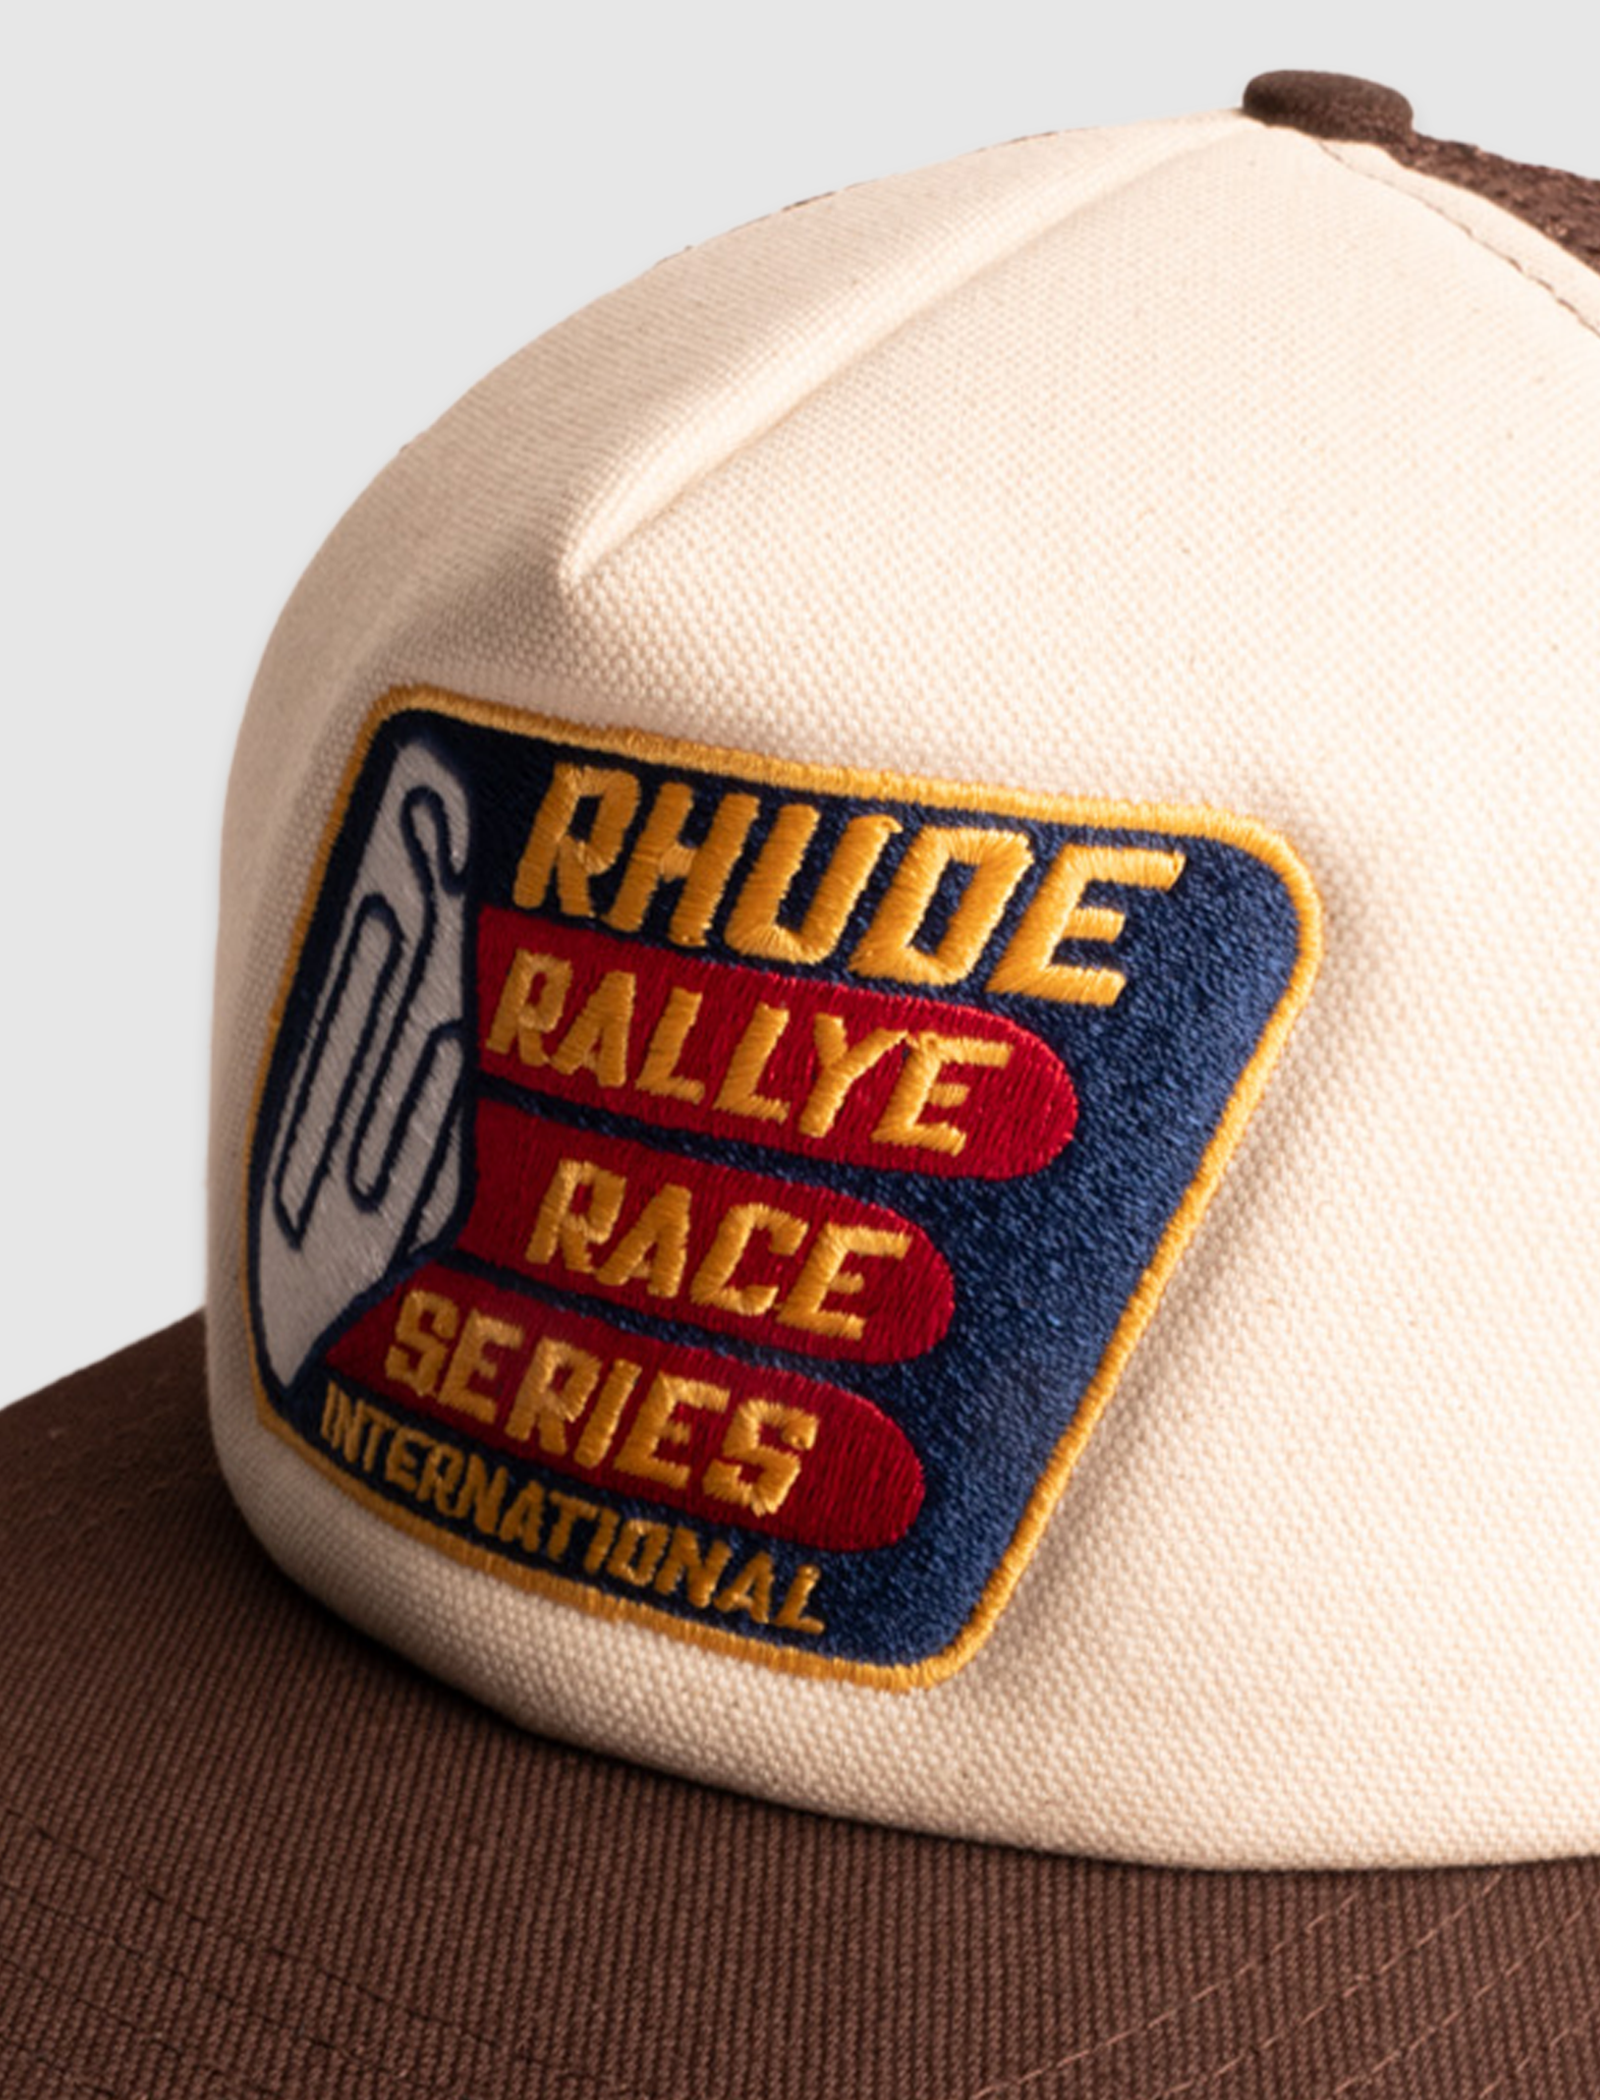 RHUDE RACE SERIES WASHED TRUCKER HAT